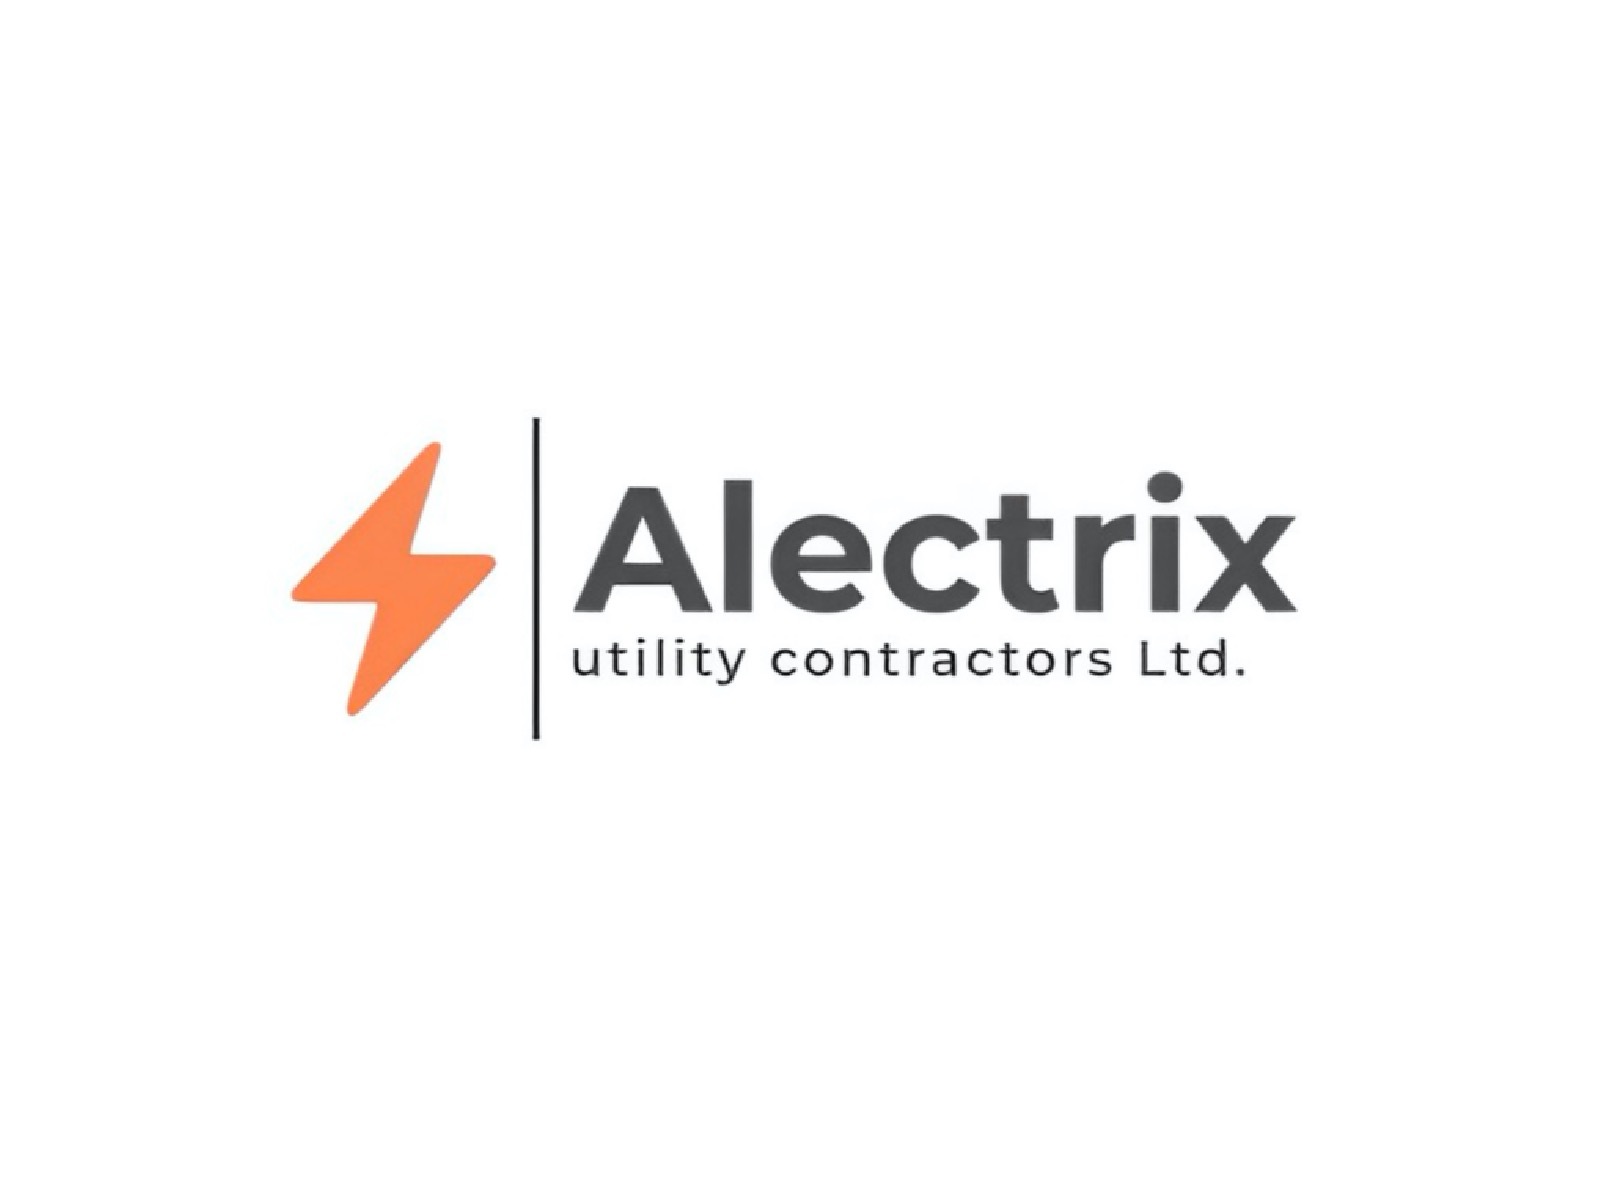 Alectrix Utility Contractors Ltd.'s logo